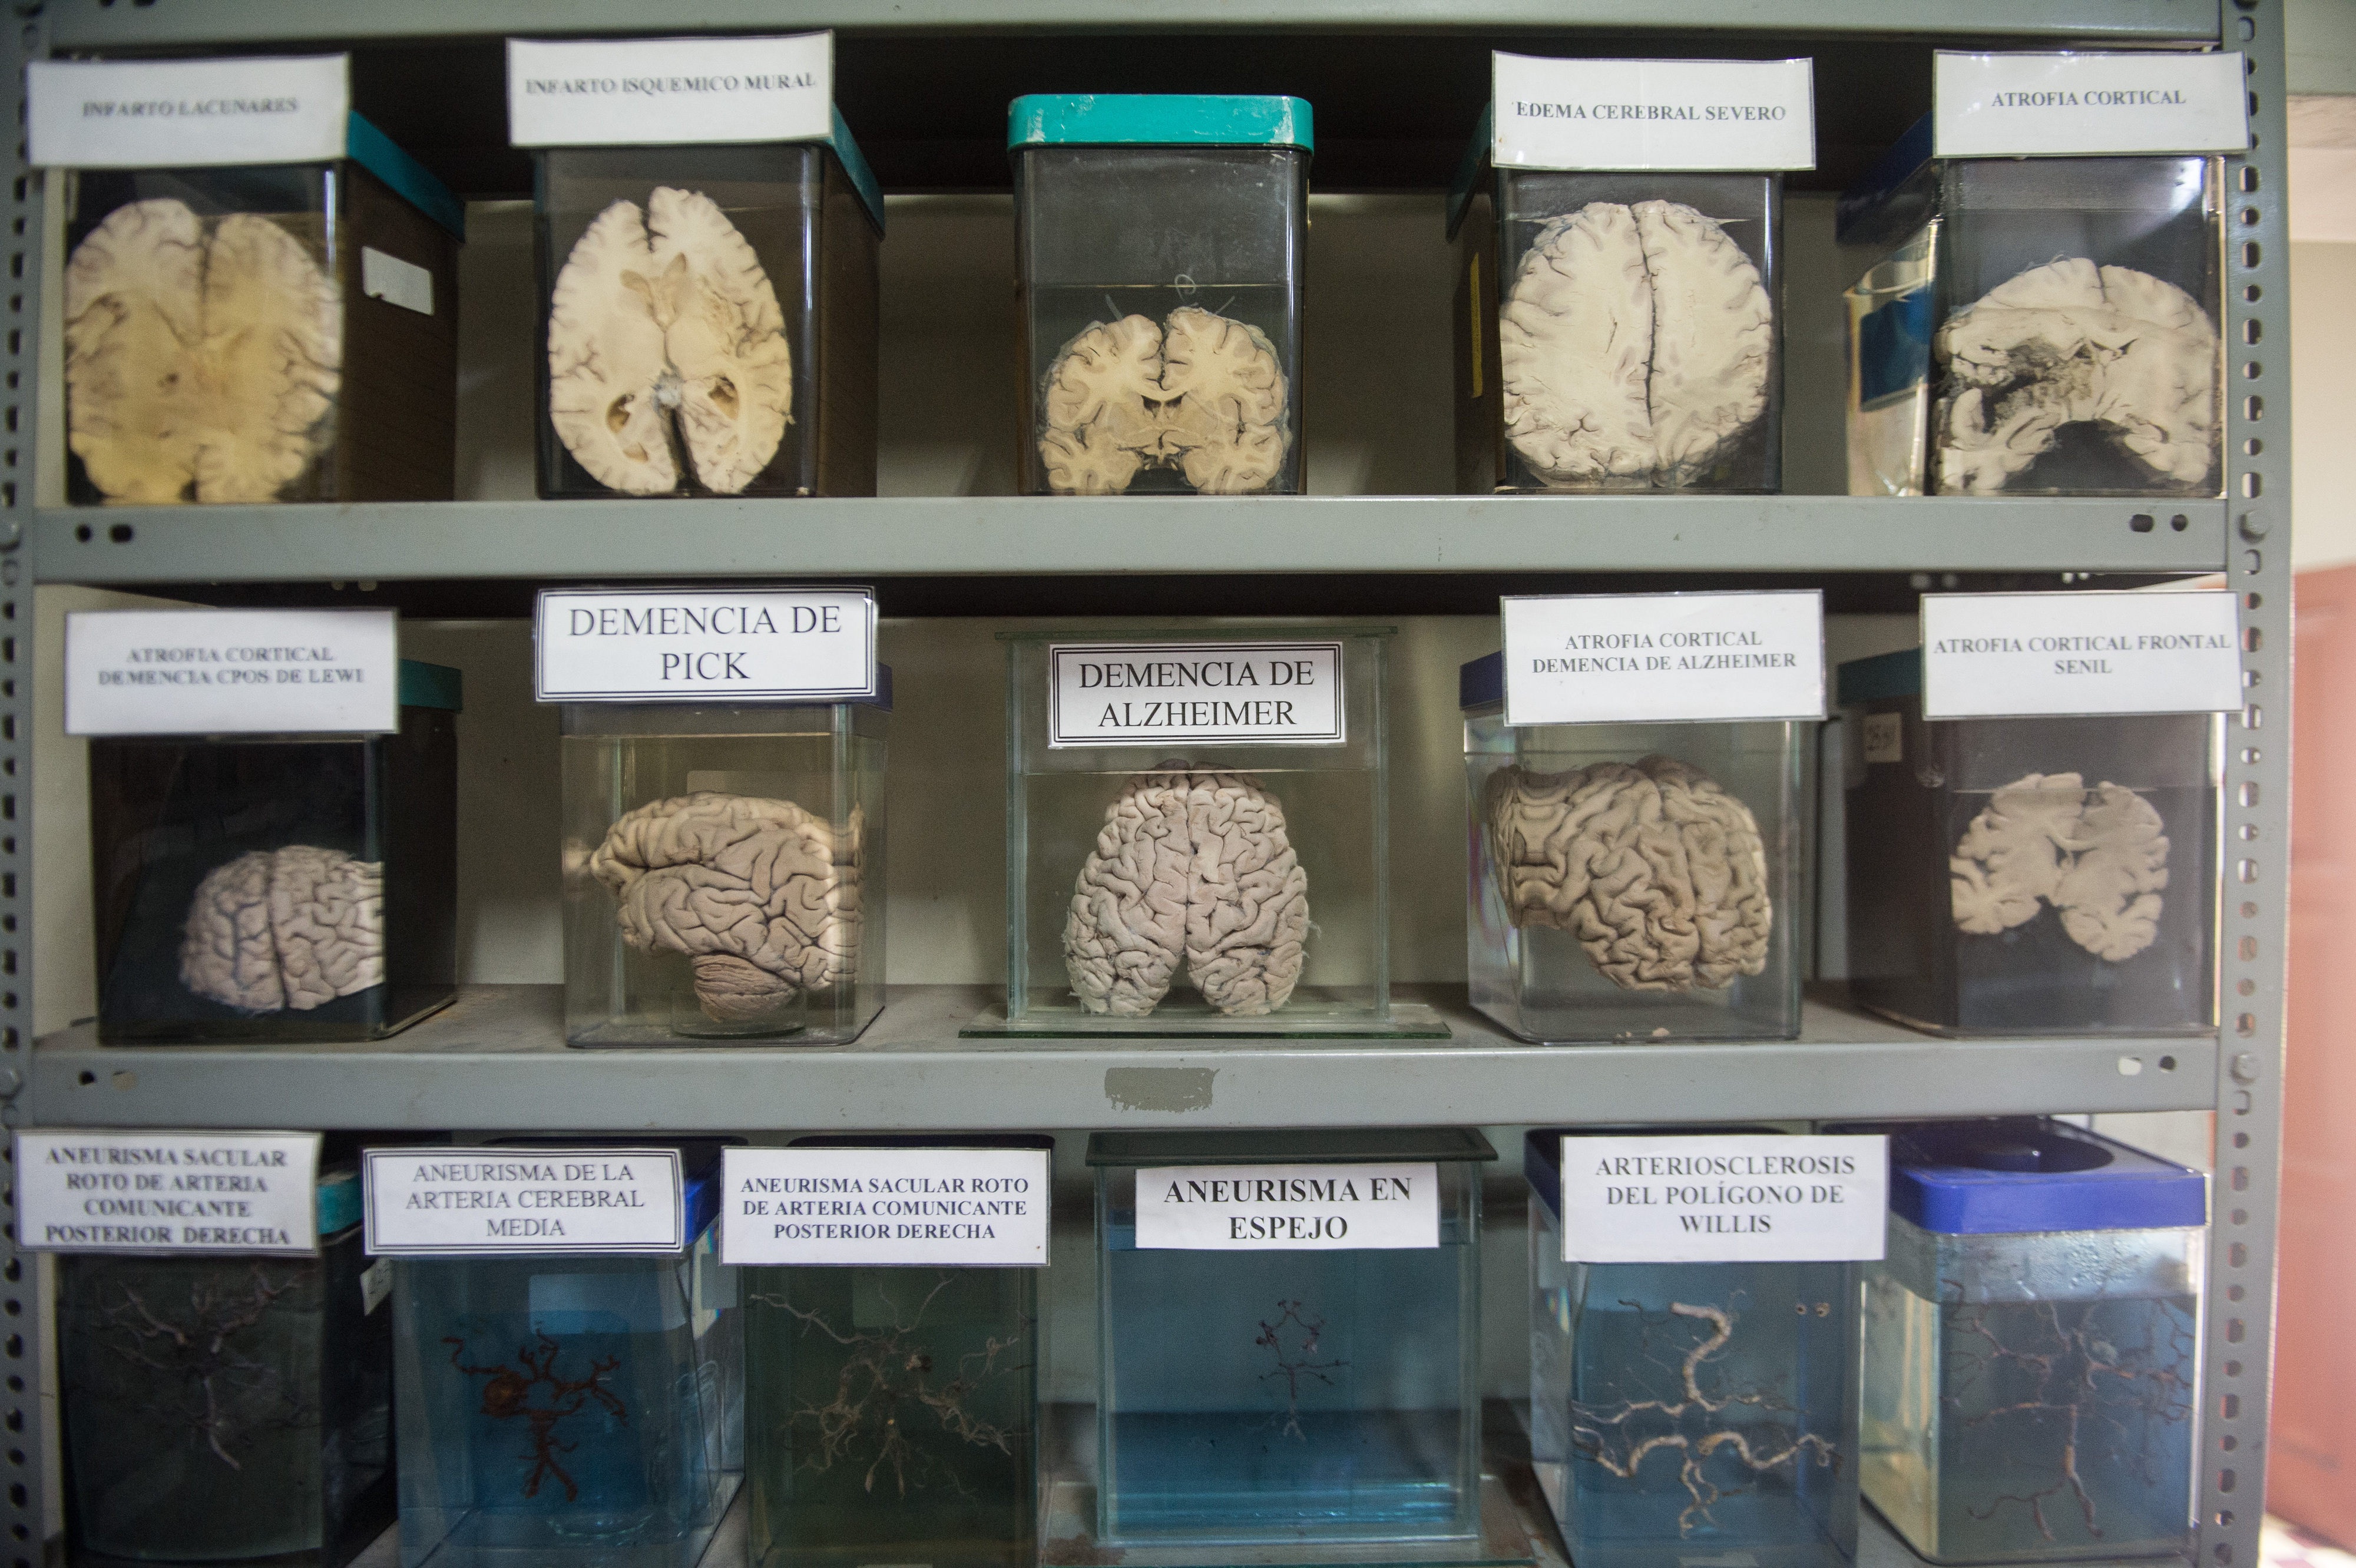 Descoberta nova estrutura no cérebro humano - Atualidade - SAPO Lifestyle